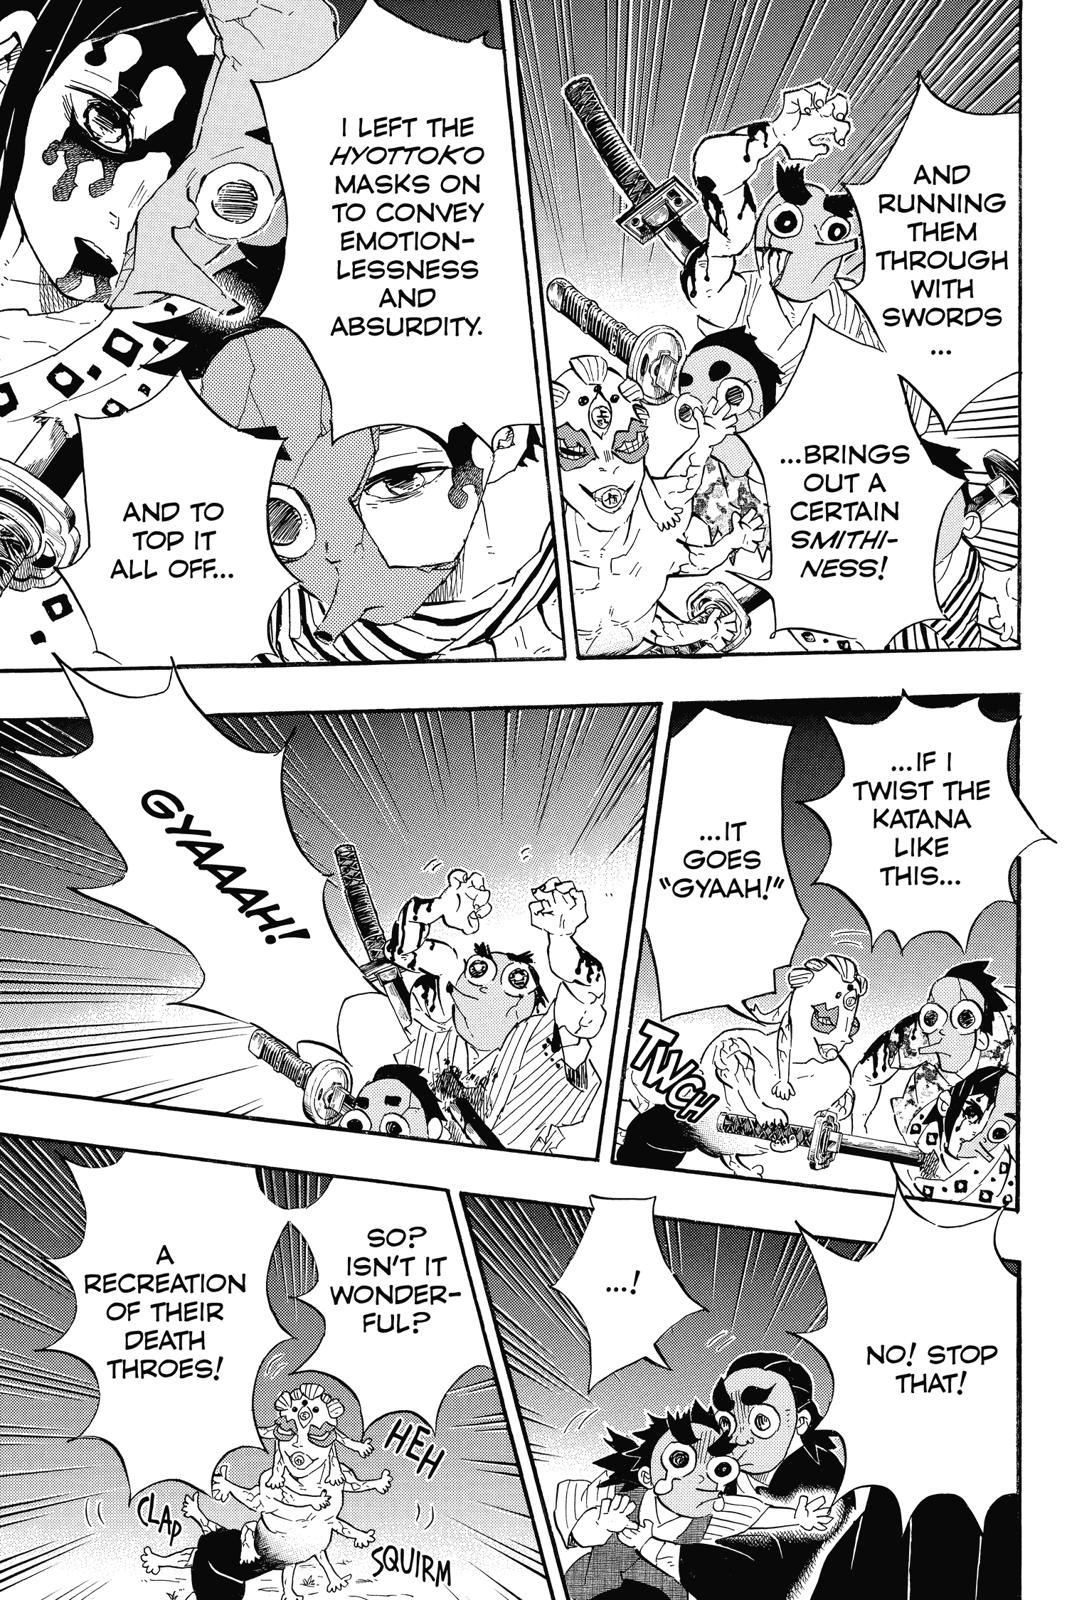 Demon Slayer Manga Manga Chapter - 111 - image 4